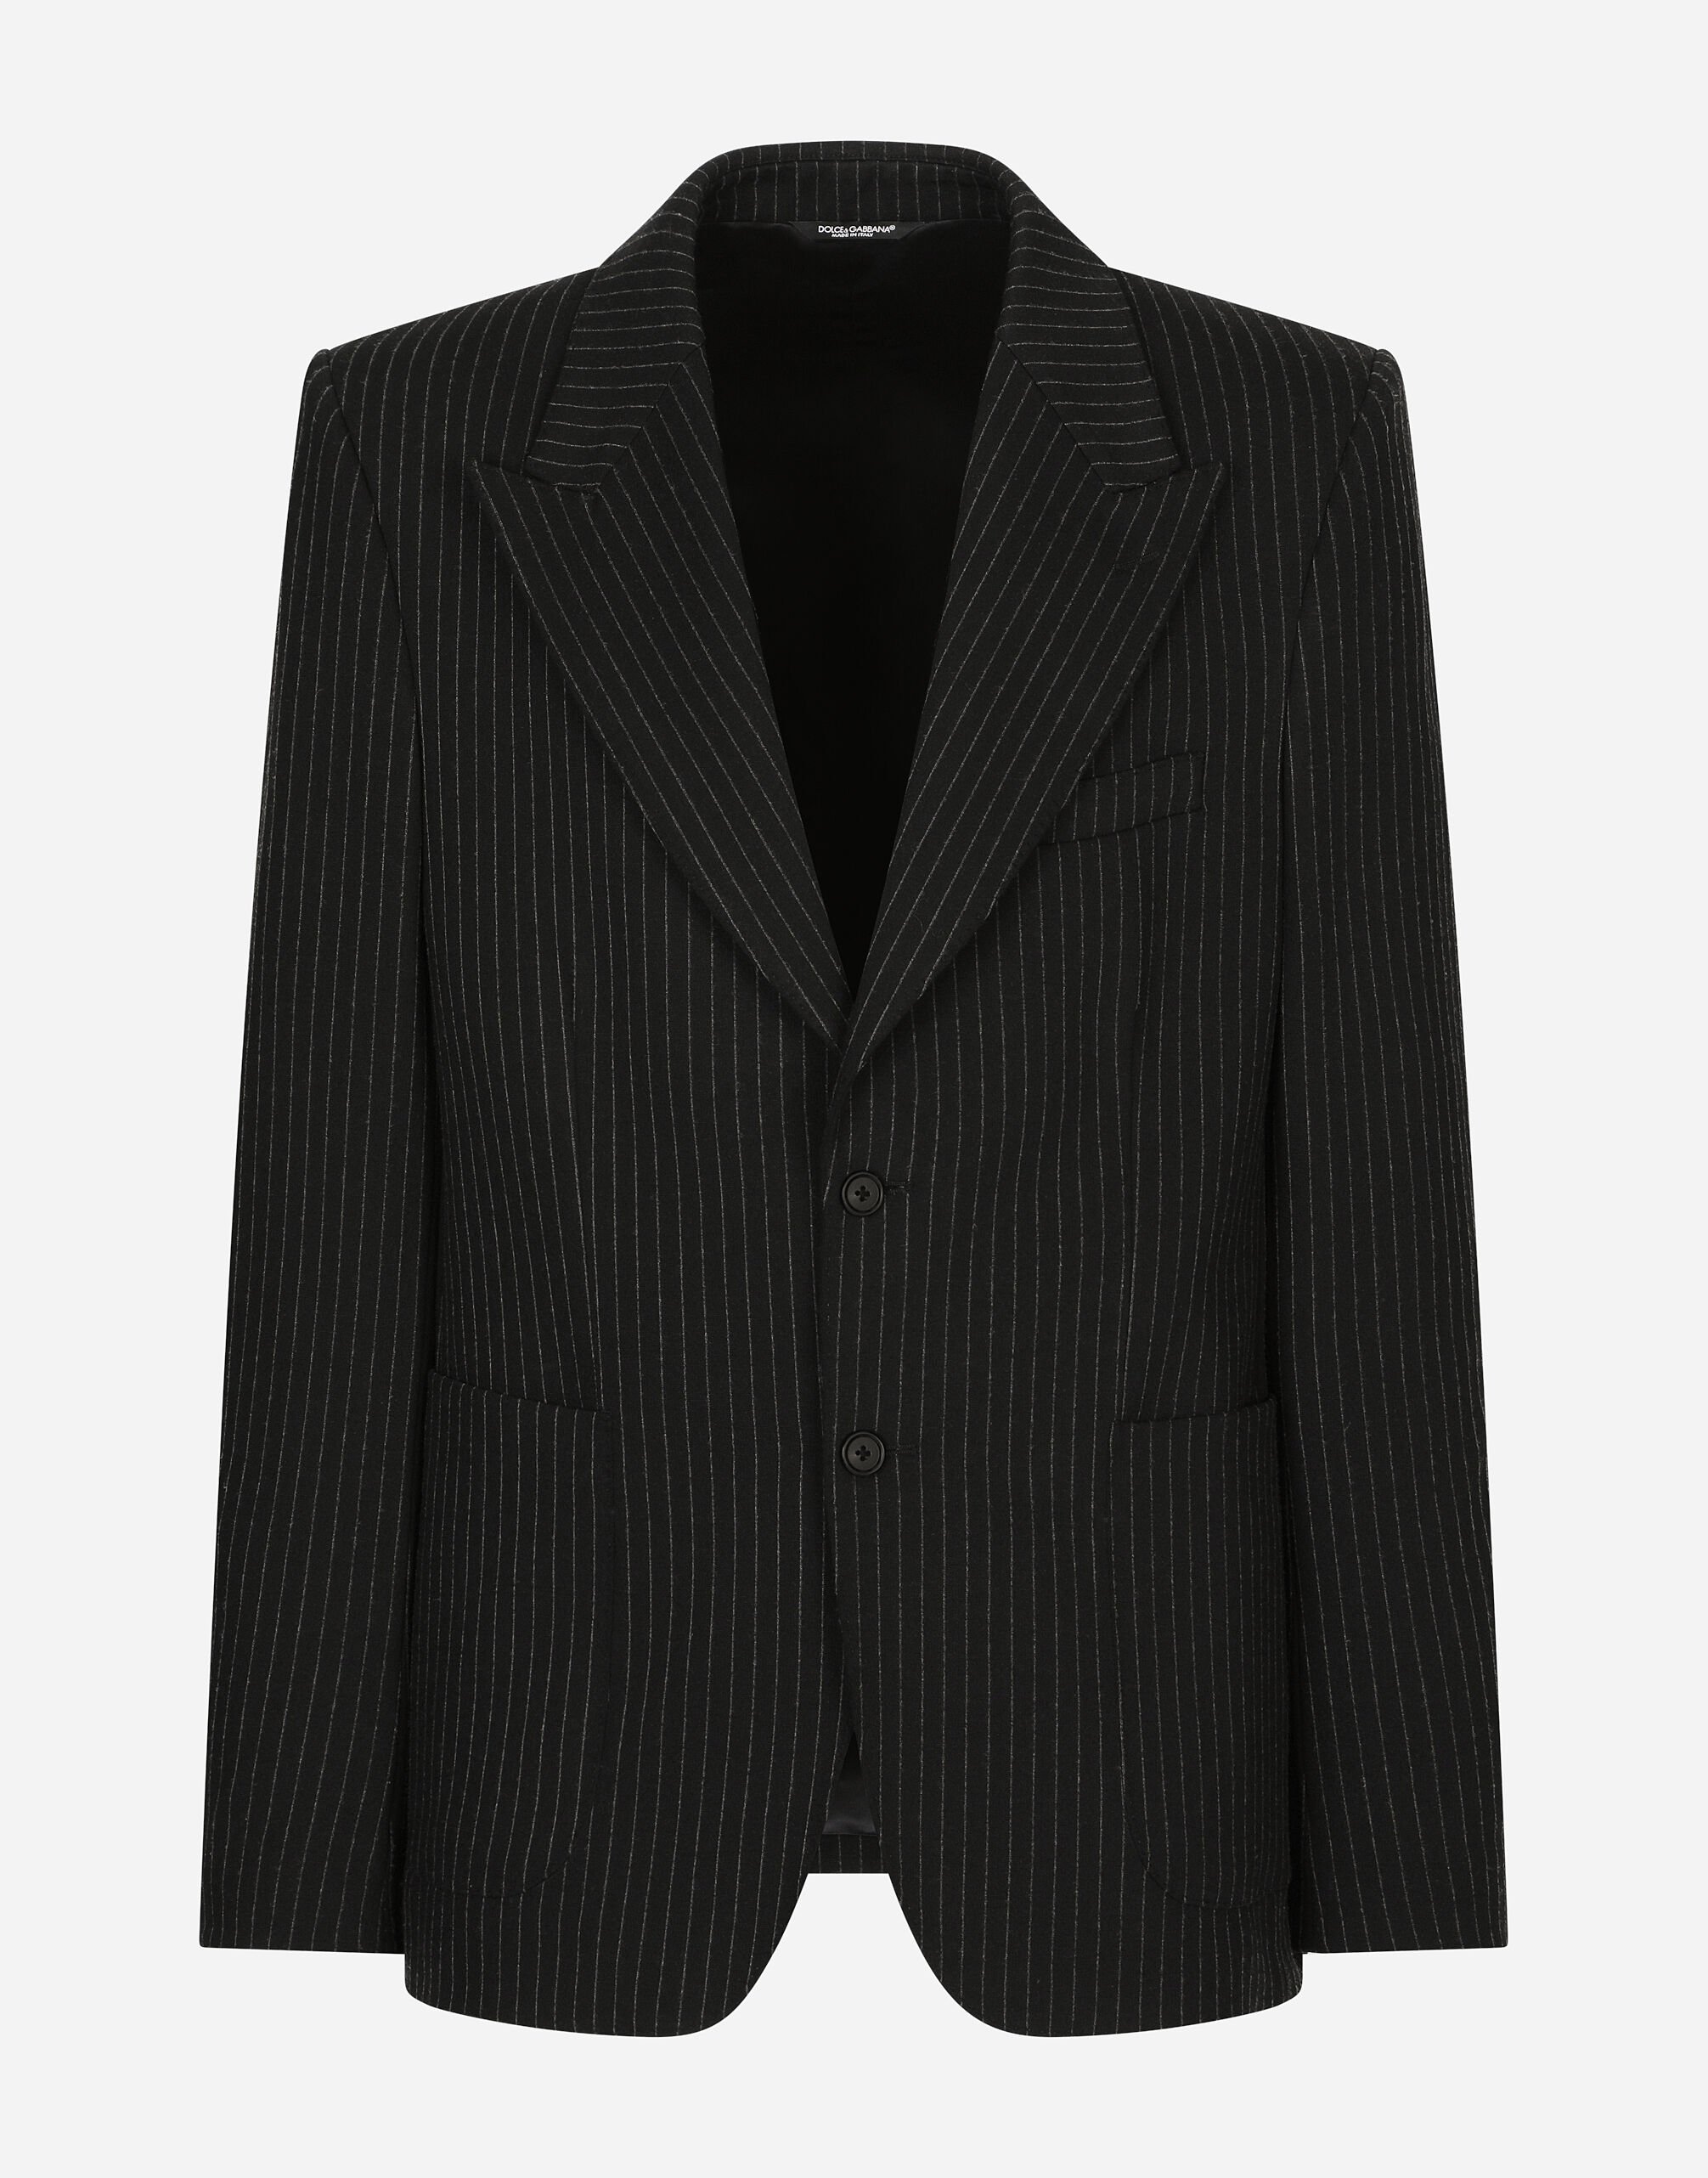 Dolce & Gabbana Pinstripe stretch jersey jacket Black VG4419VP187